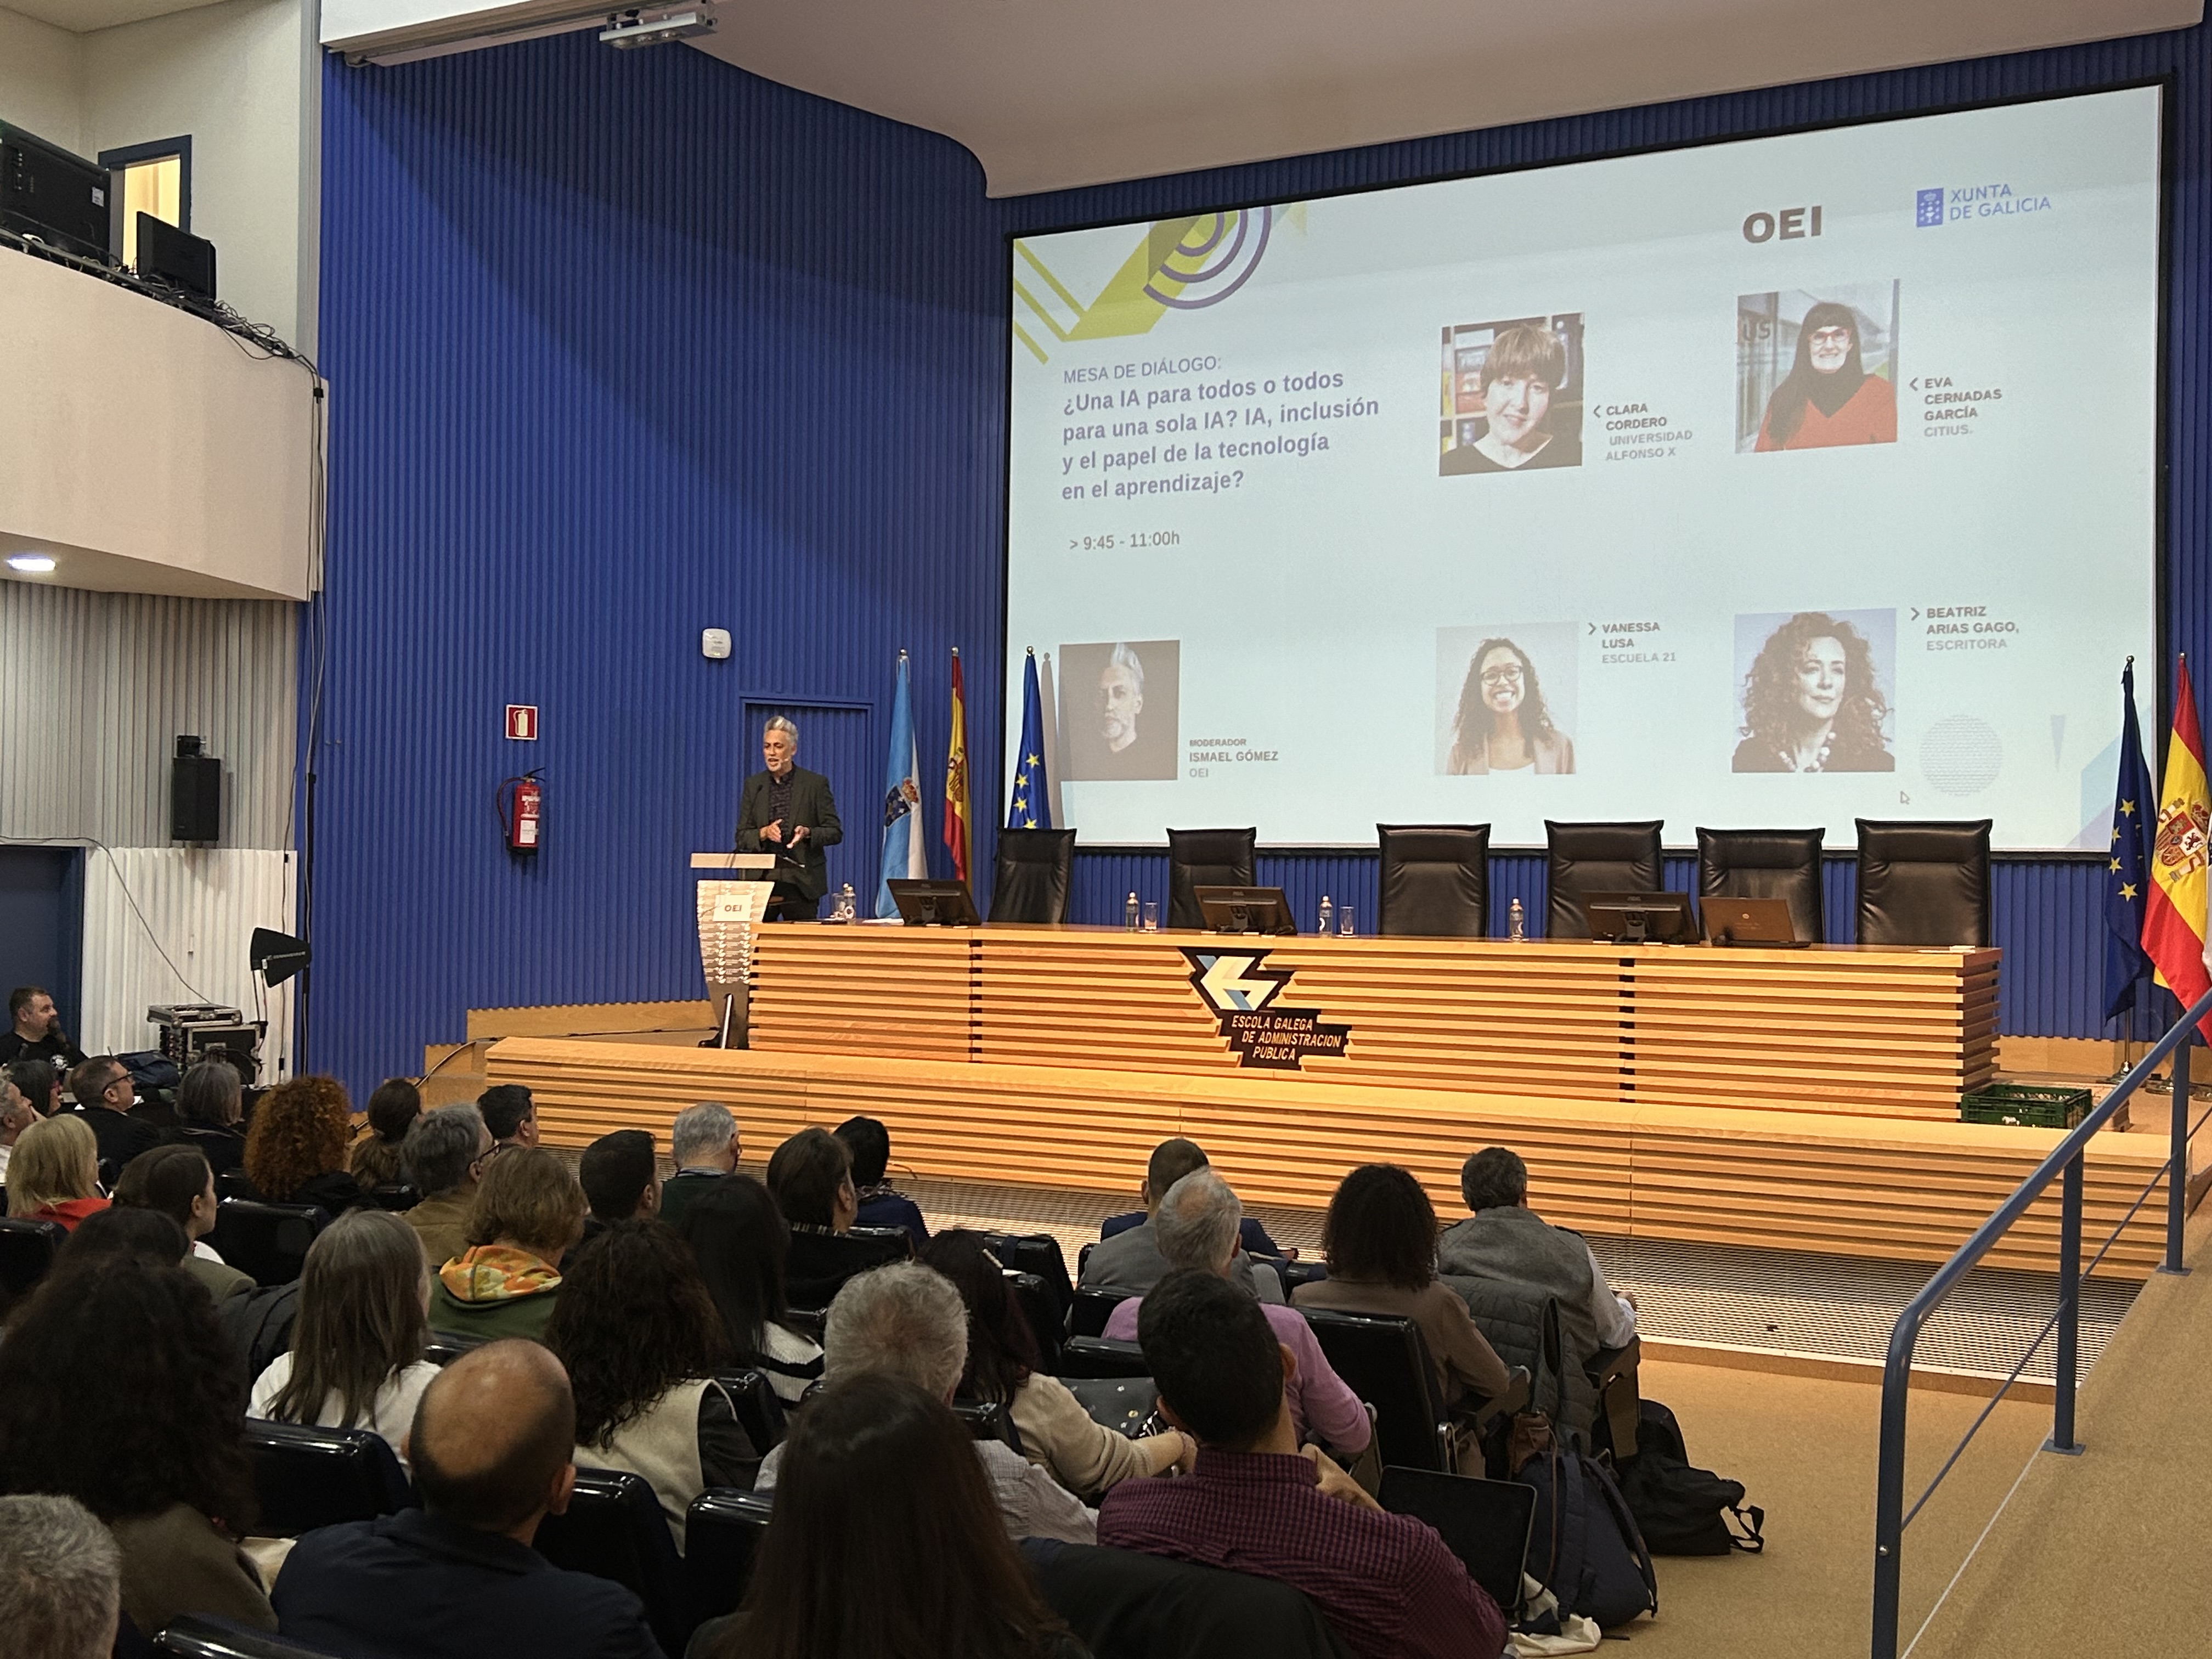 La transformación digital y el papel de la IA en la educación a debate en seminario organizado por la OEI y la Xunta de Galicia en Santiago de Compostela